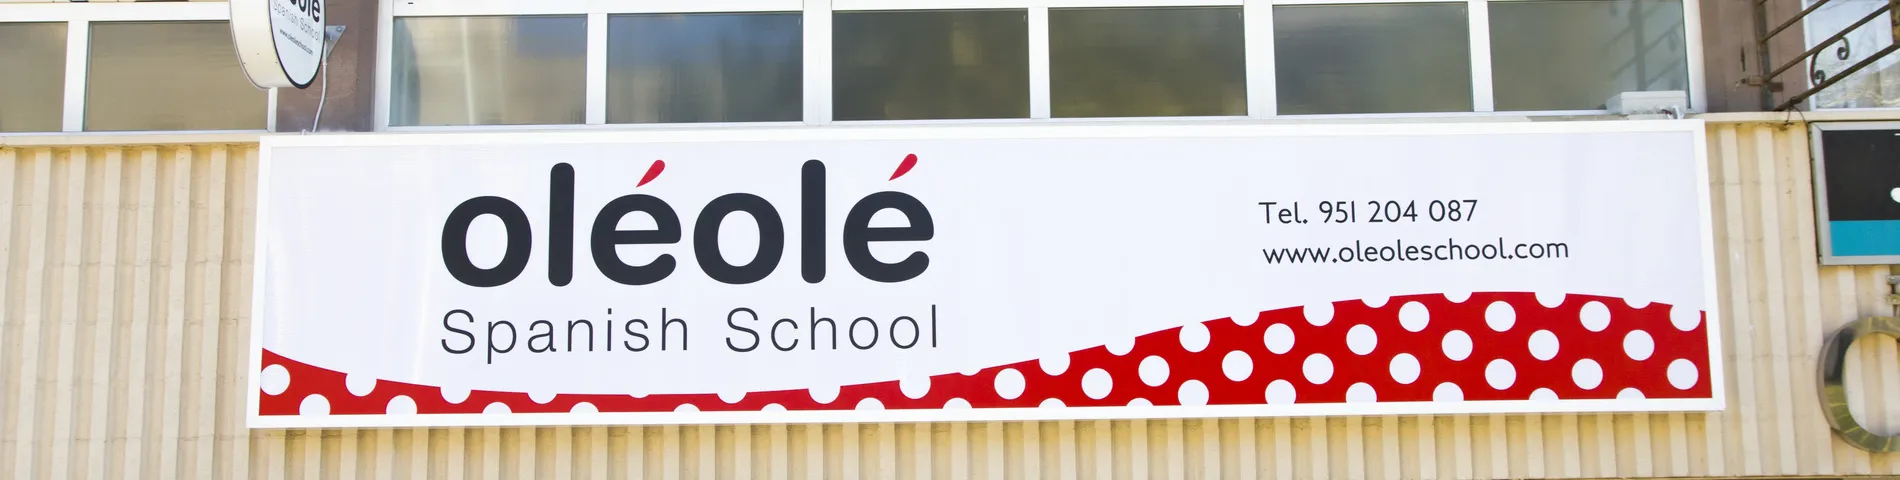 OléOlé Spanish School bilde 1